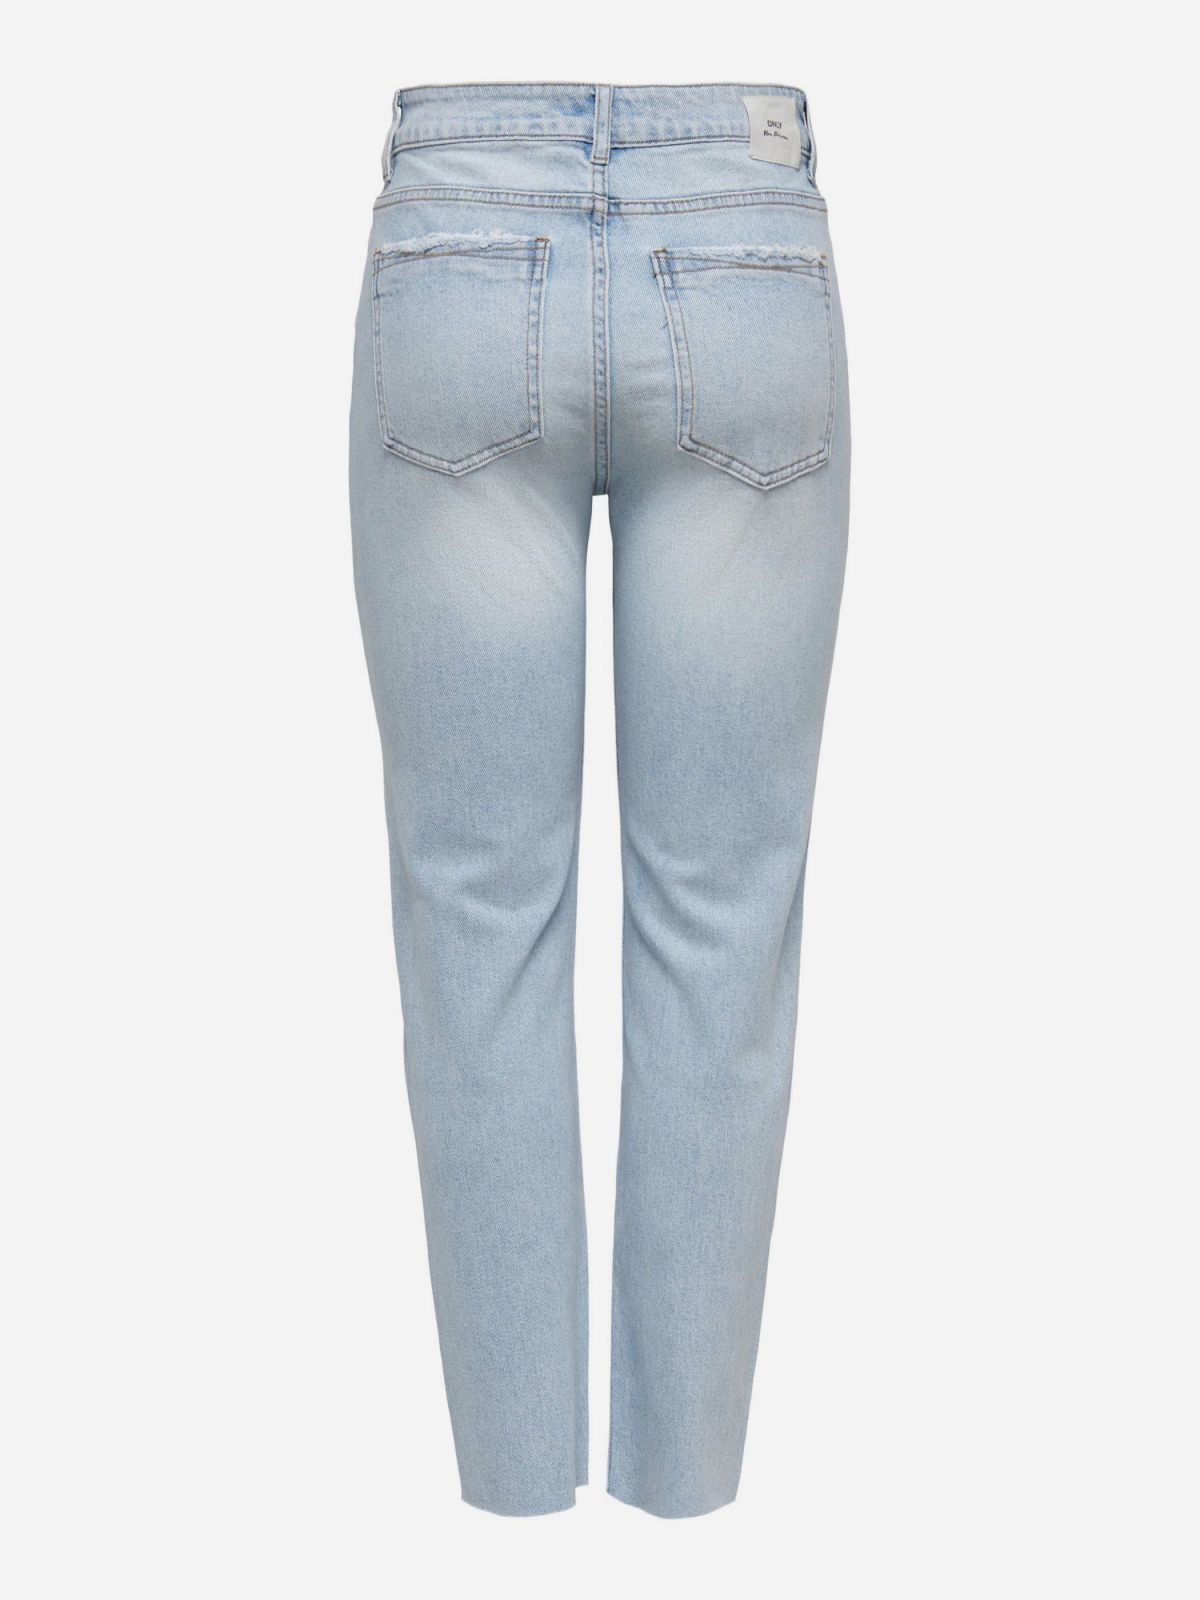  מכנסי ג'ינס בגזרה ישרה / נשים של ONLY